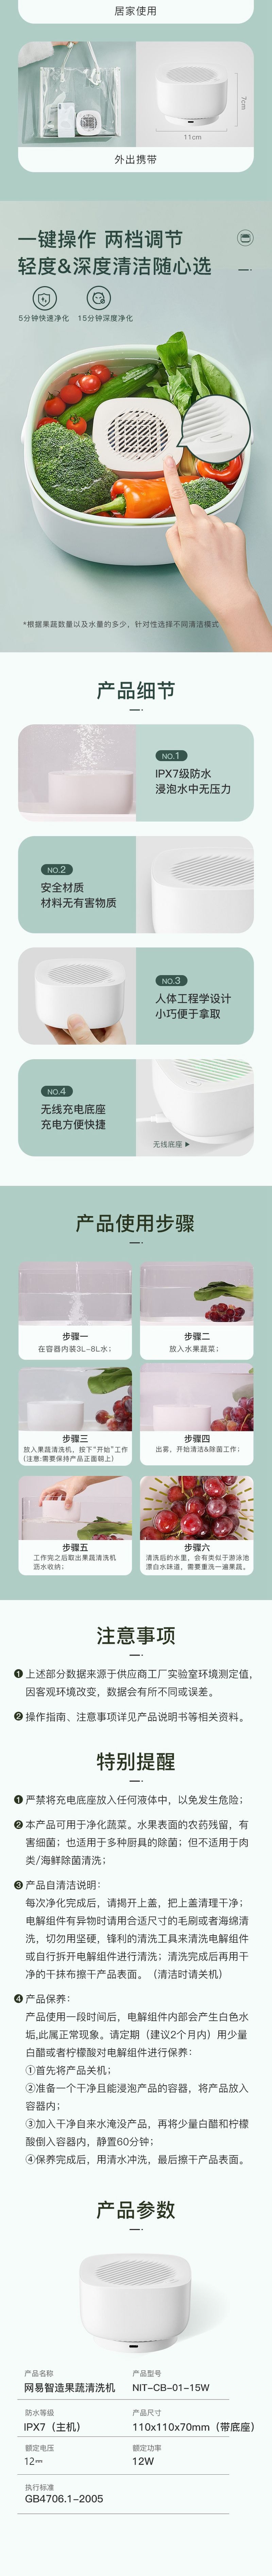 【香港DHL 5-7日达】网易智造 水果连皮放心吃 果蔬清洗机 瓷白色 